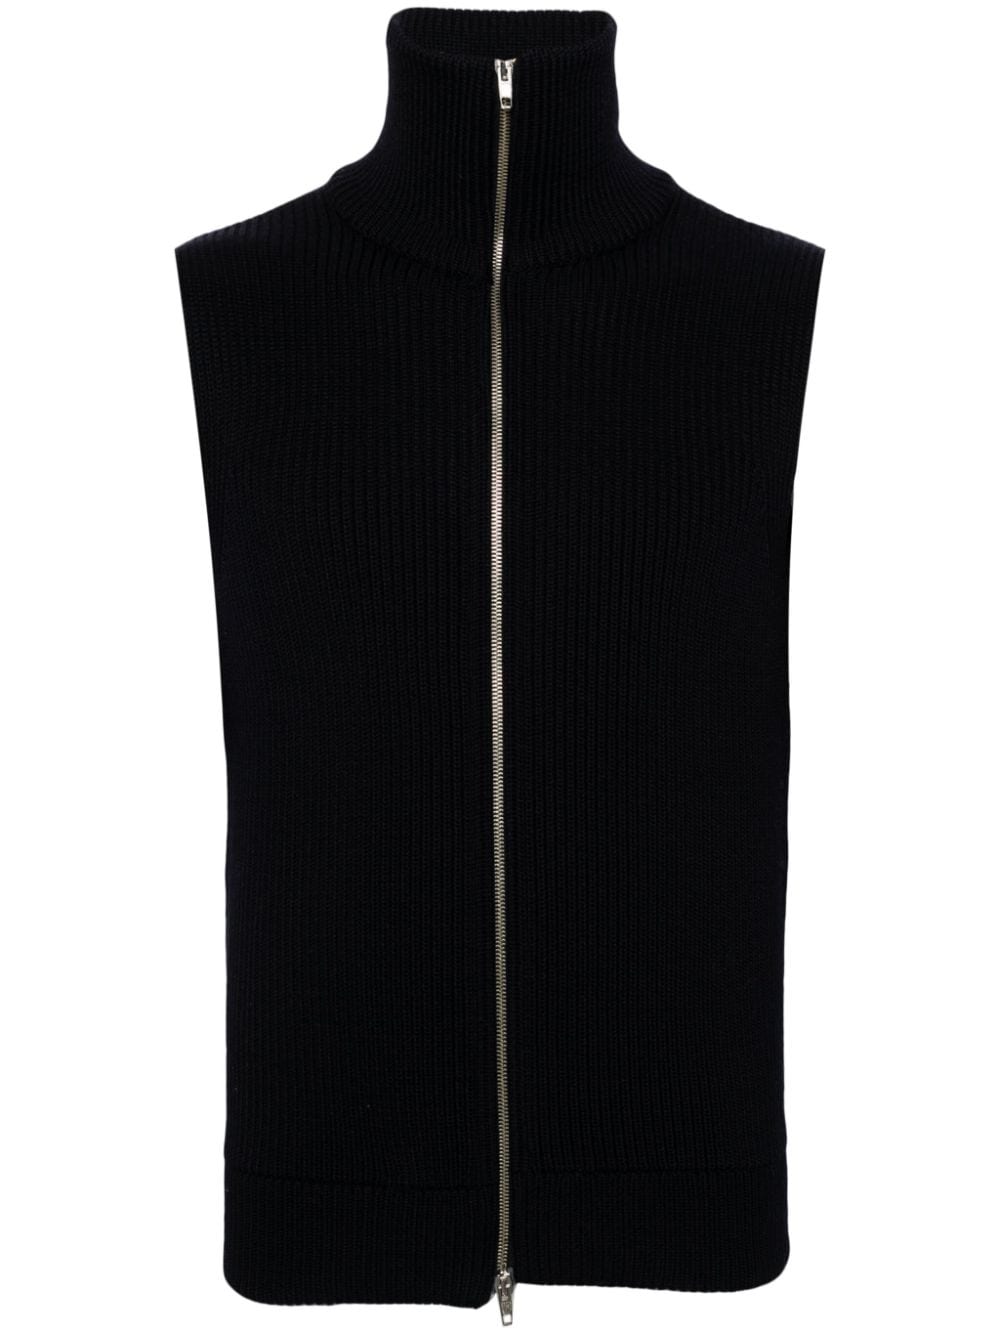 2000s zip-up virgin wool vest